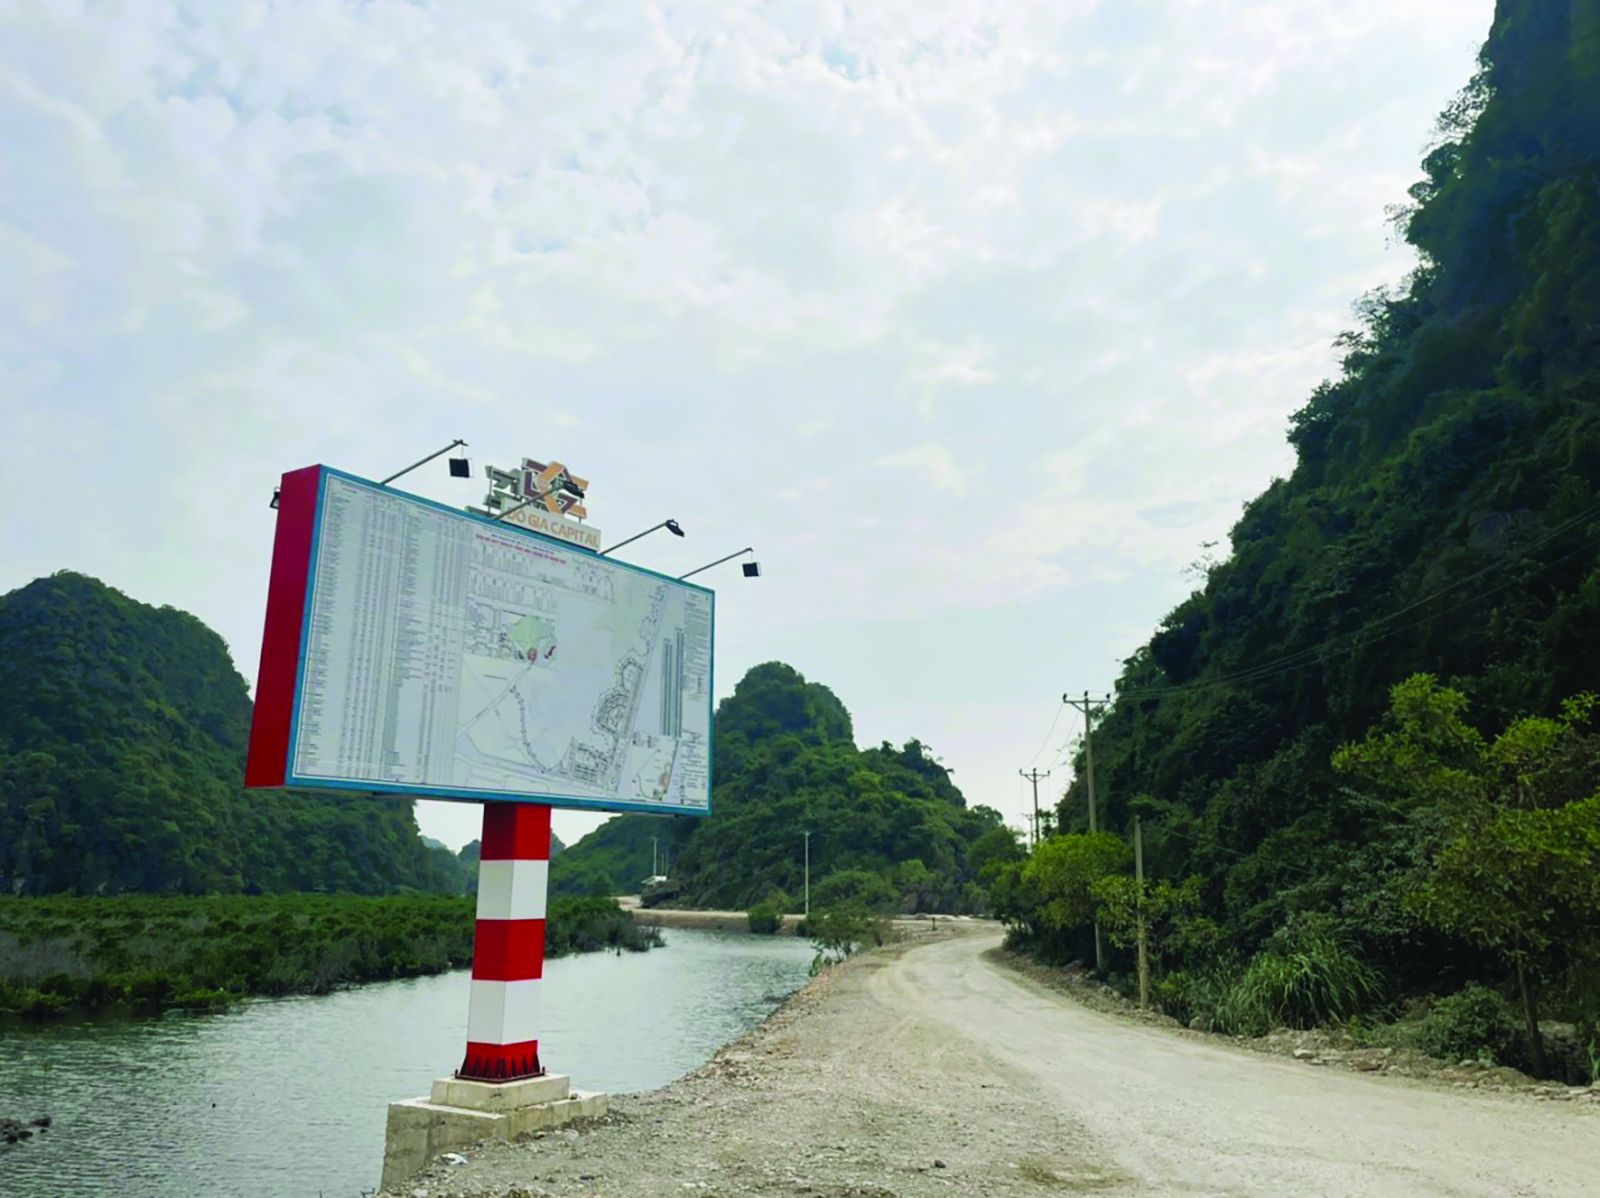  Sơ đồ Quy hoạch dự án khu đô thị 10B phường Quang Hanh được đặt ngay tại đường vào dự án. Ảnh: Tiến Dũng